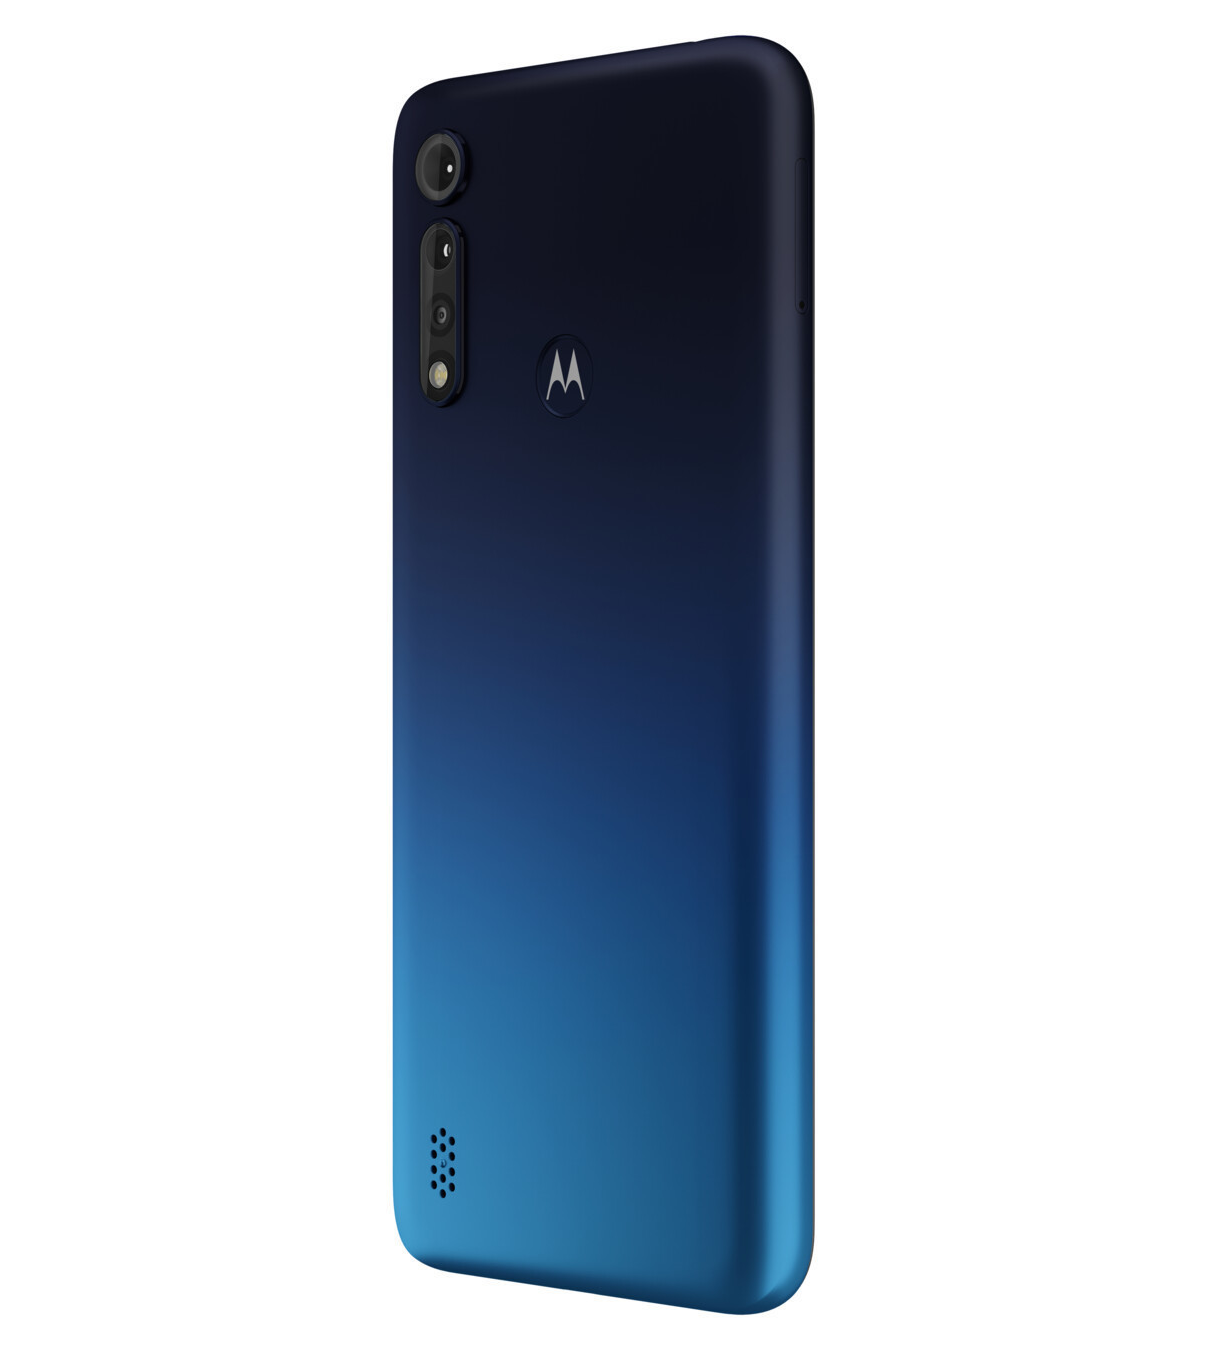 MOTOROLA REFURBISHED (*) Dual-SIM GB SIM 64 blau Dual Power G8 Moto Lite